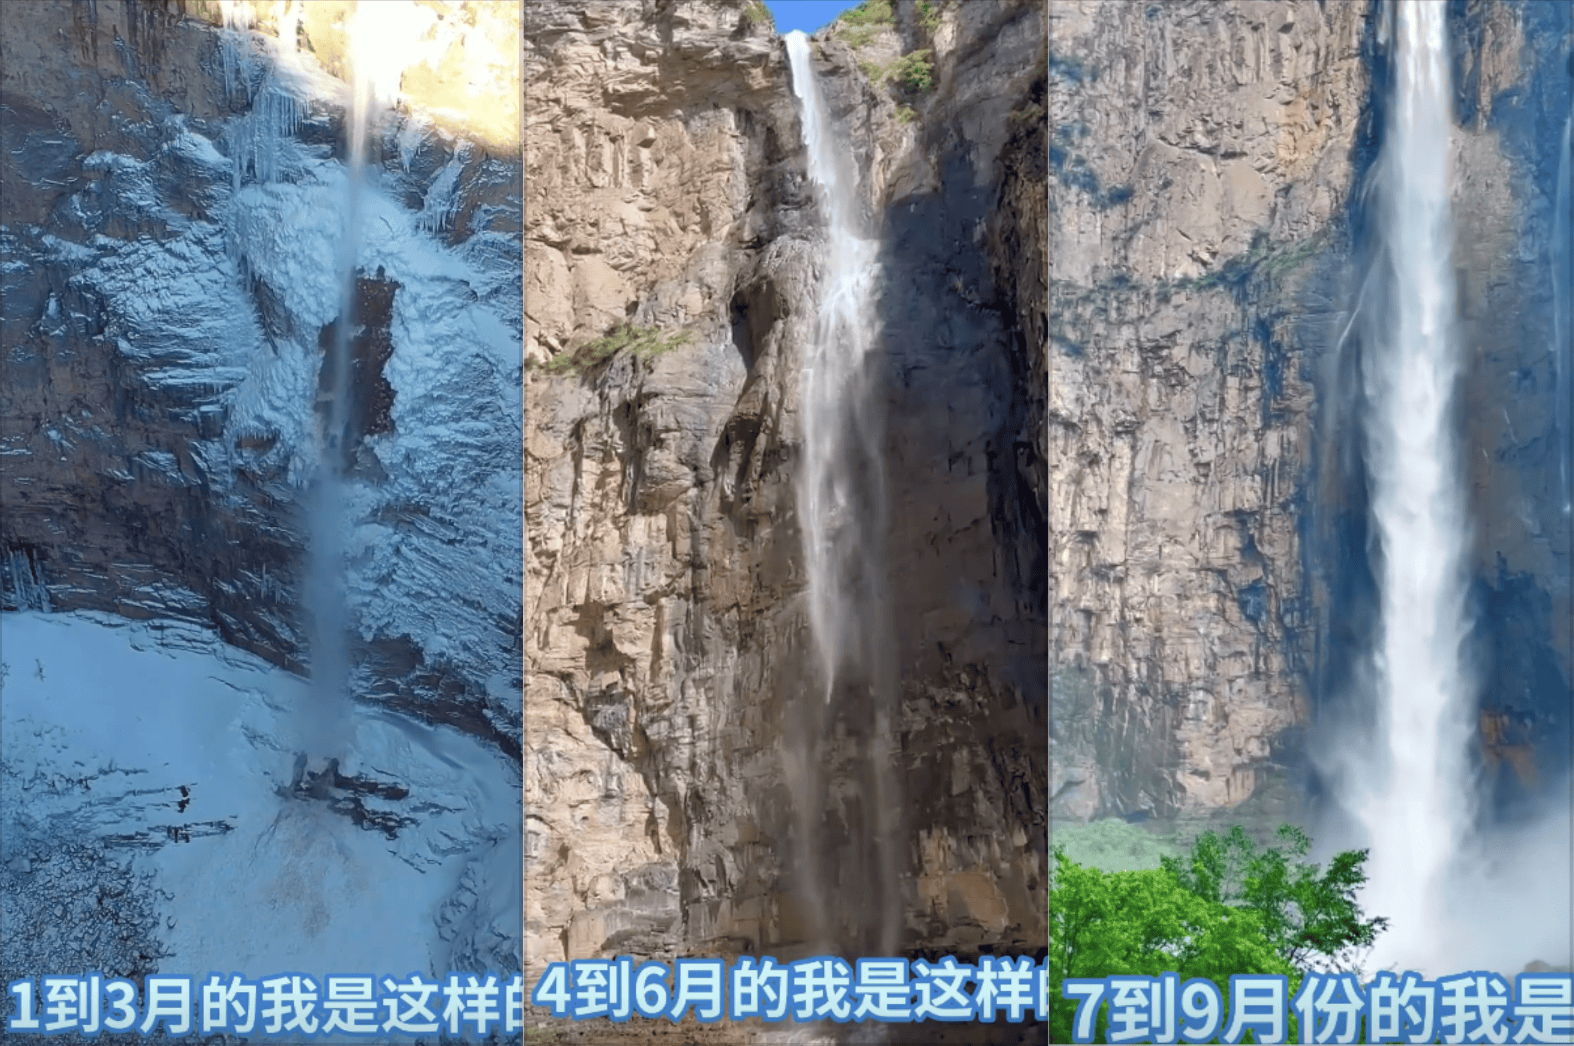 景区回应 在枯水期做的提升 云台山瀑布源头竟是大水管